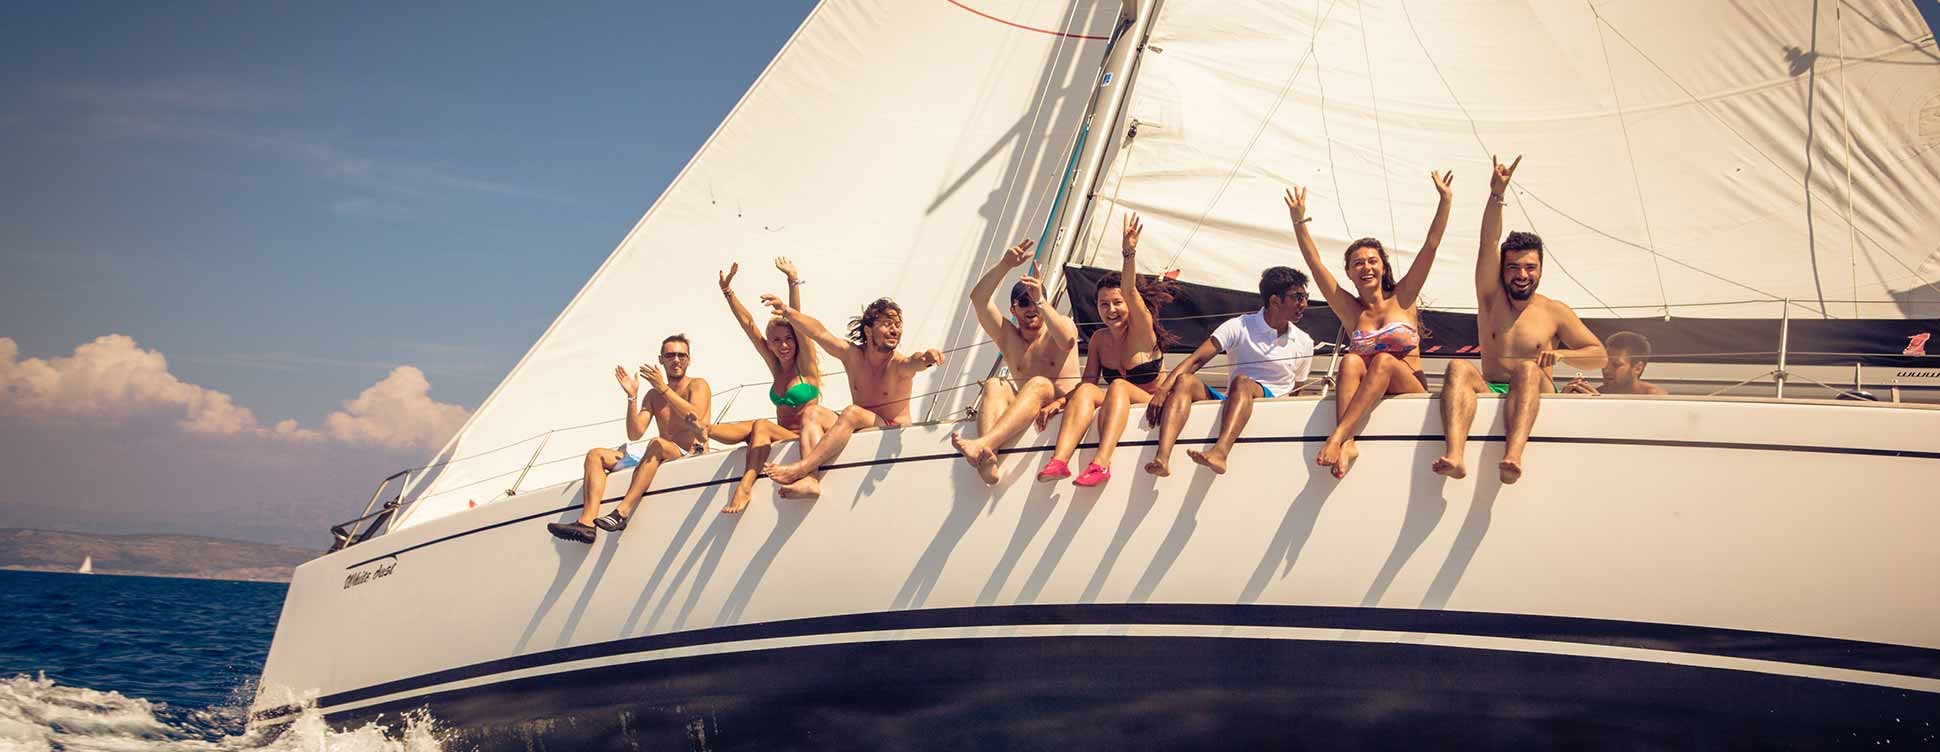 mehrere junge Leute sitzten am Rand eines Segelboots und haben gute Laune